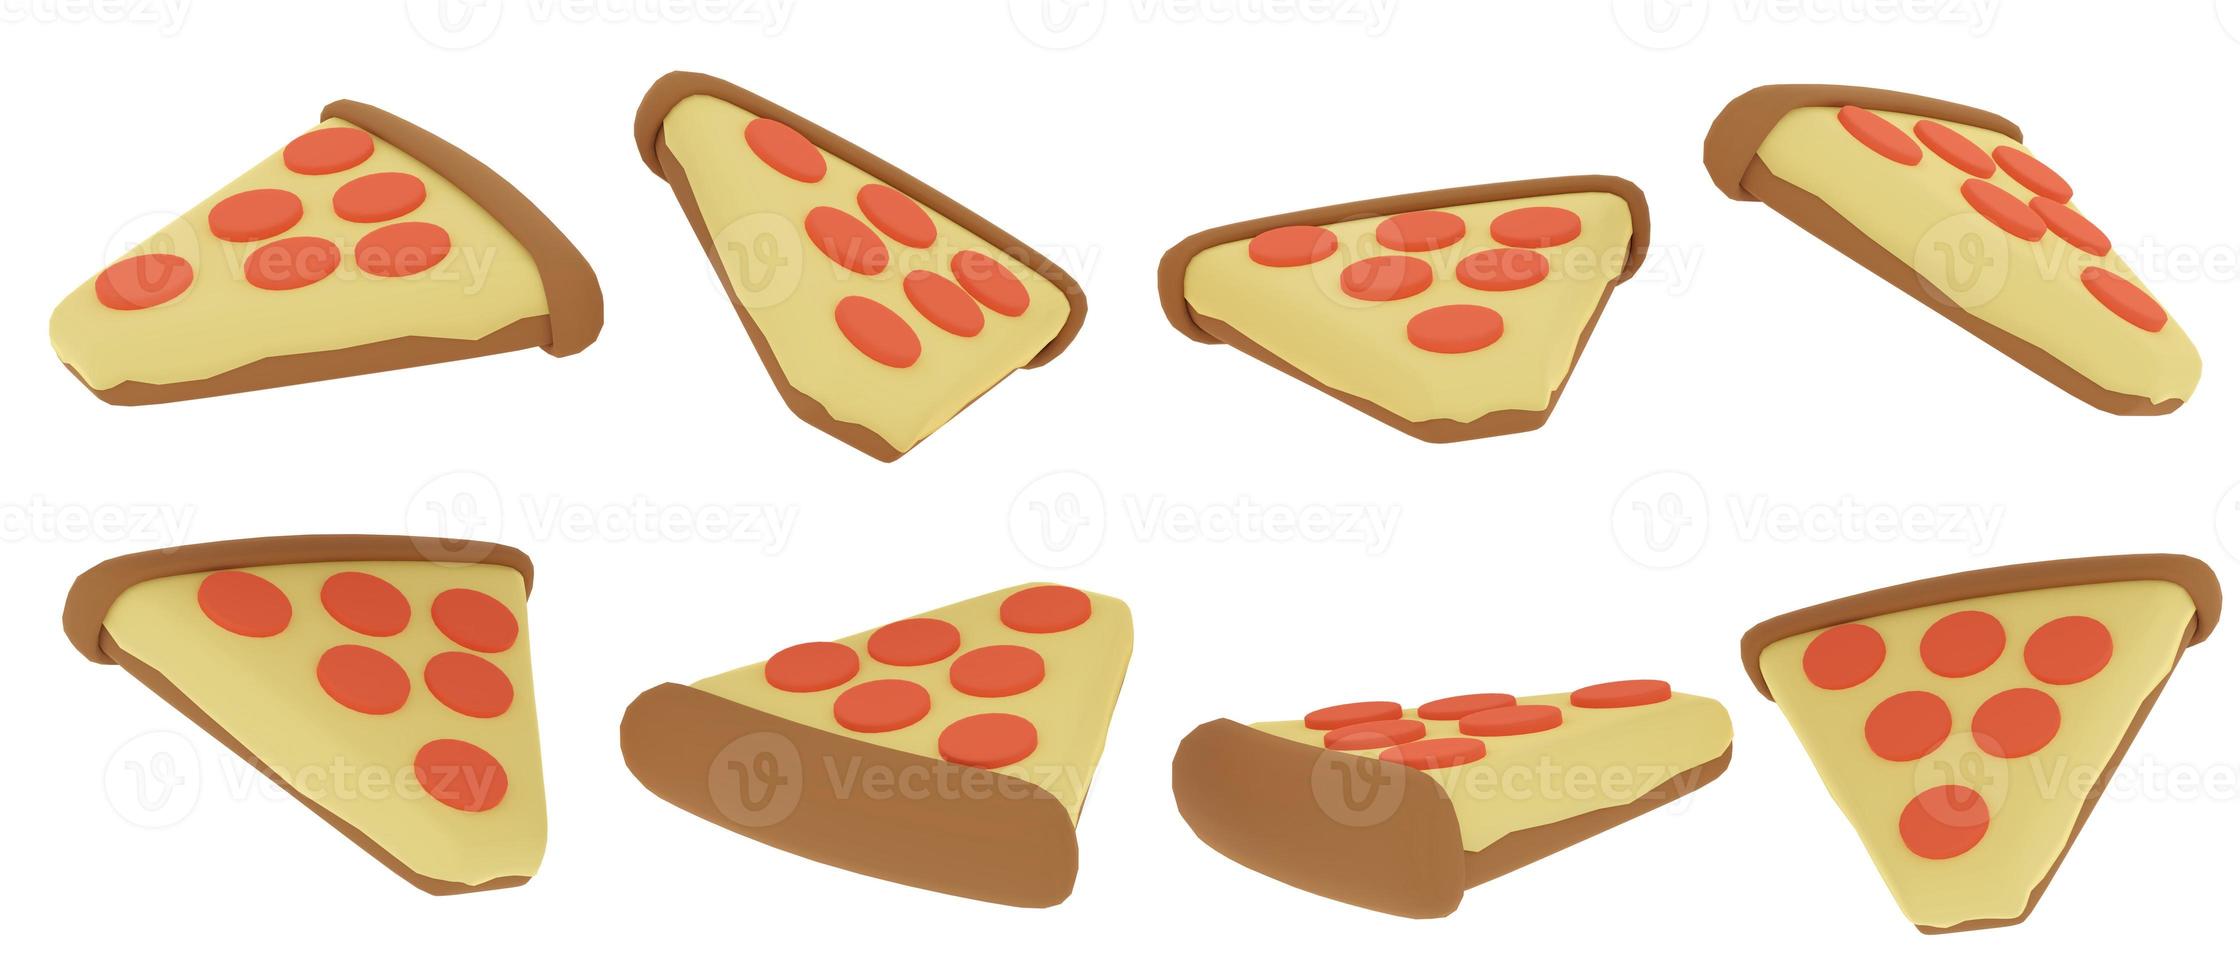 3D-rendering concept van voedsel. set van draaiende plak pizza in veel weergaven draaien in verschillende hoeken geïsoleerd op een witte achtergrond. 3D render. 3D illustratie. foto